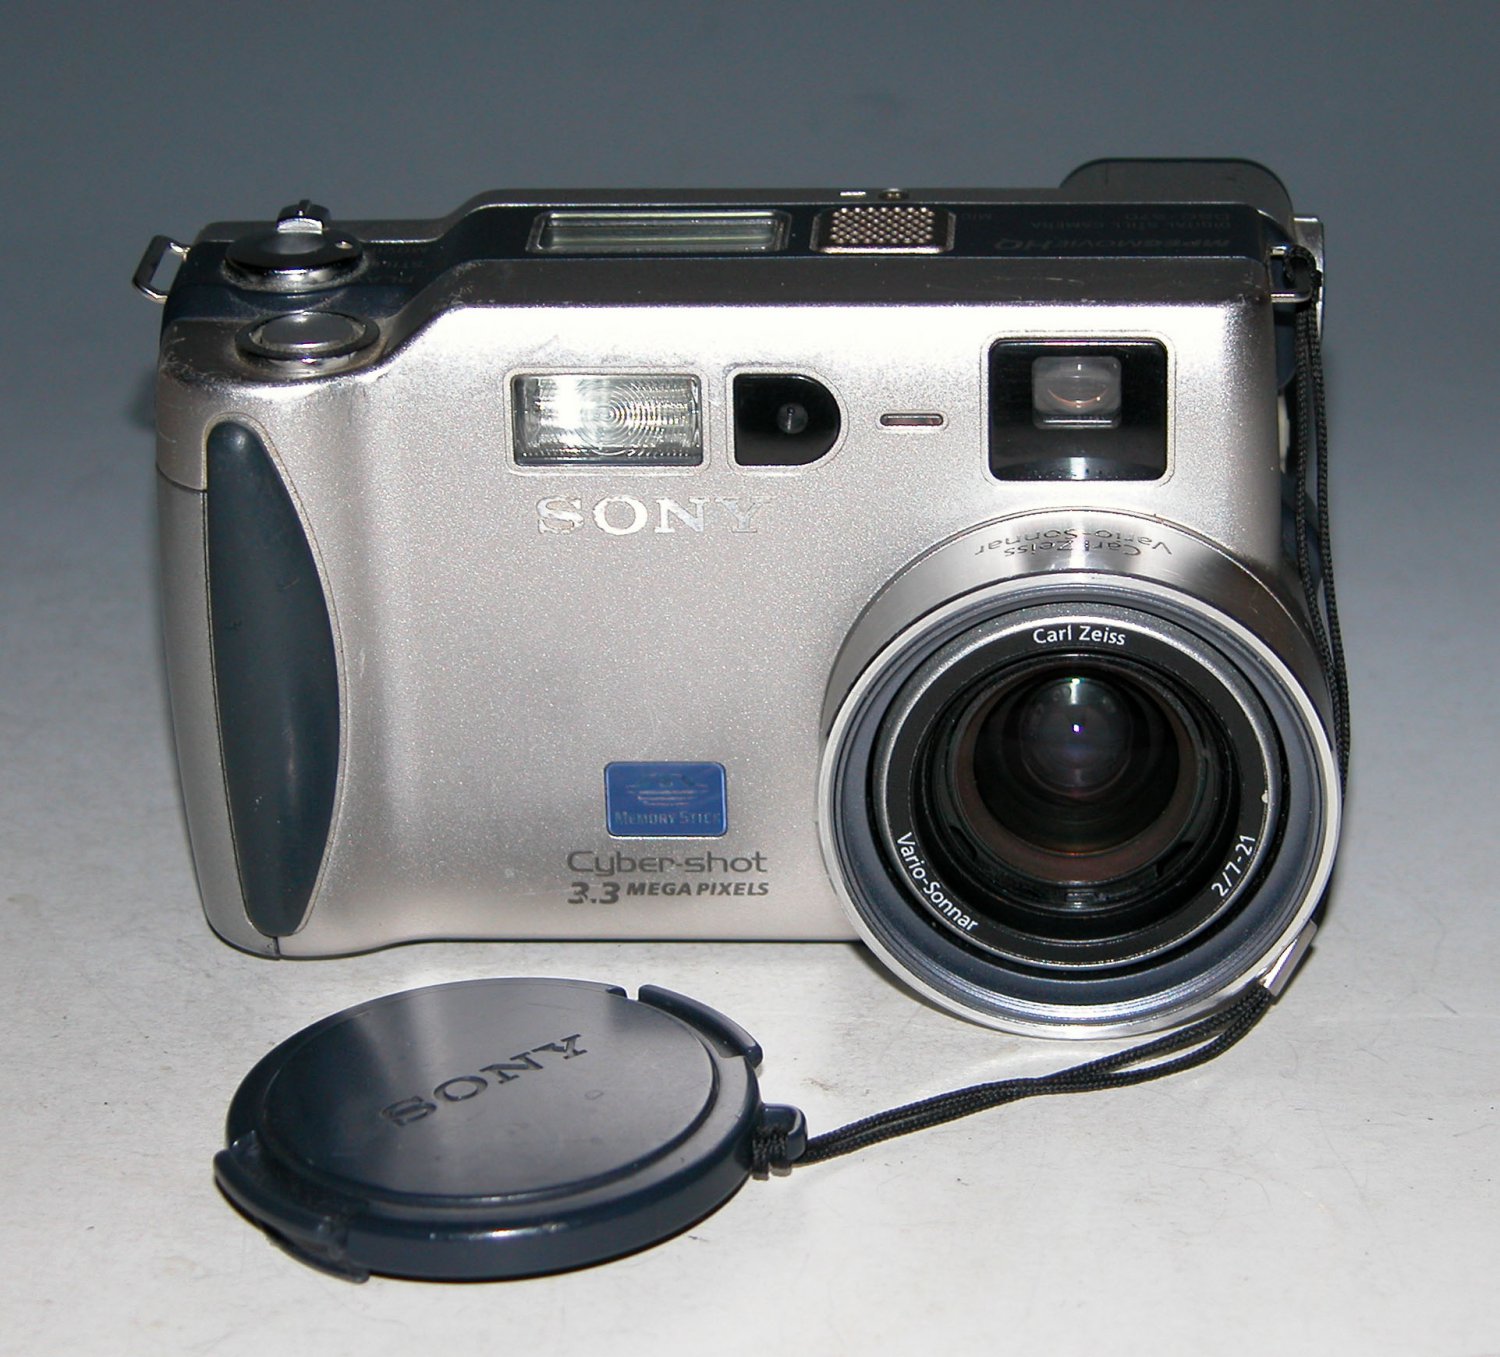 Sony Cyber-shot DSC-S70 3.2MP Digital Camera - Silver #7614